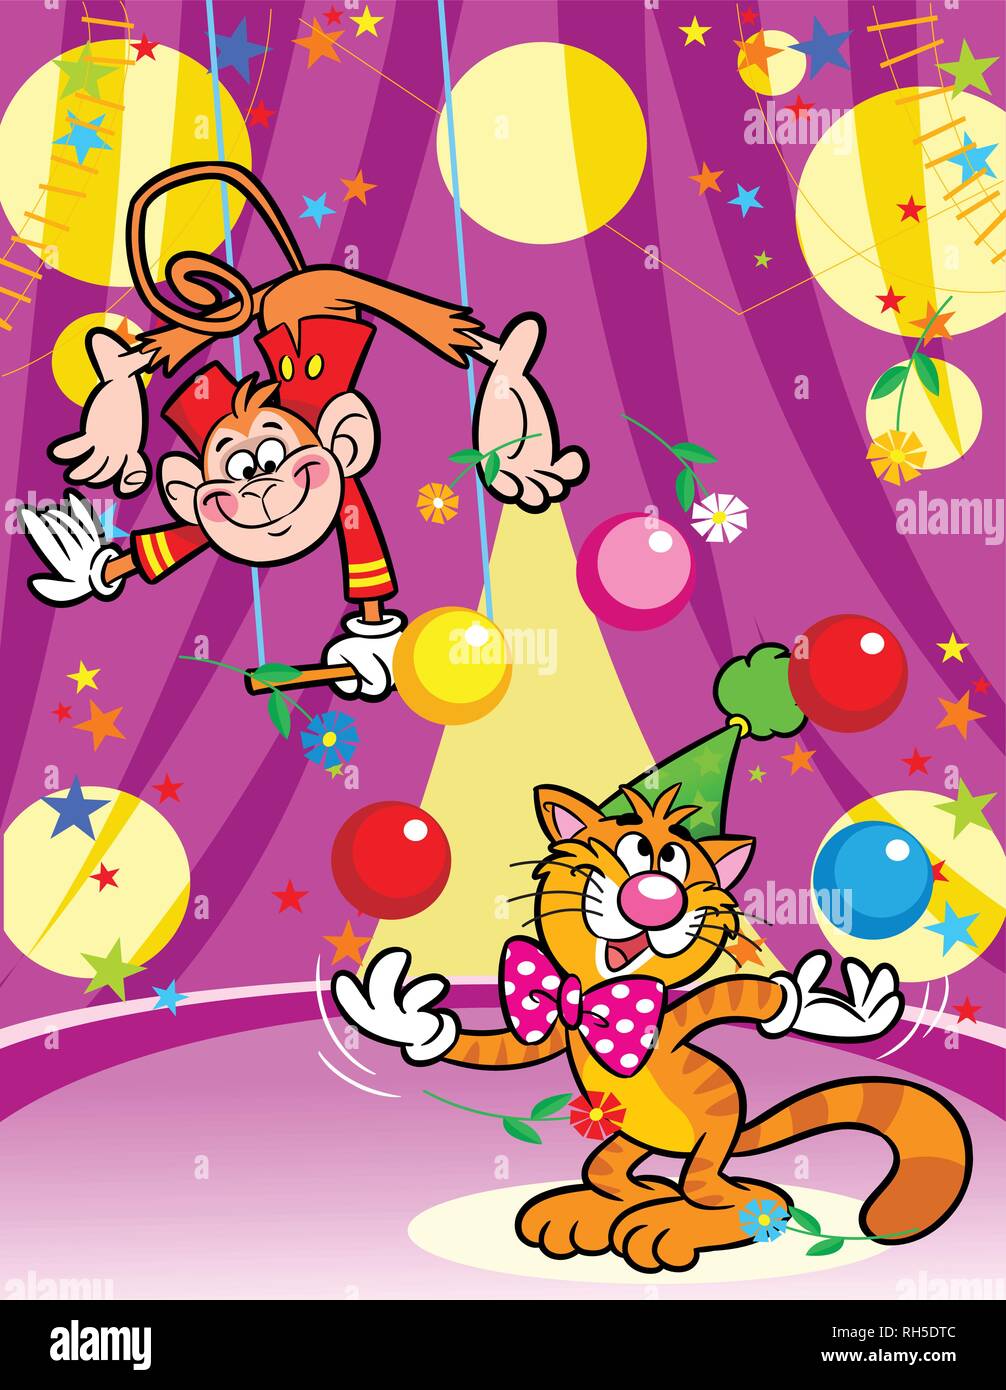 L'illustration montre un singe dans un cirque, qui effectue des acrobaties sur les balançoires. Dans l'arène de gingembre cat présente le nombre de balles. Illustration de Vecteur